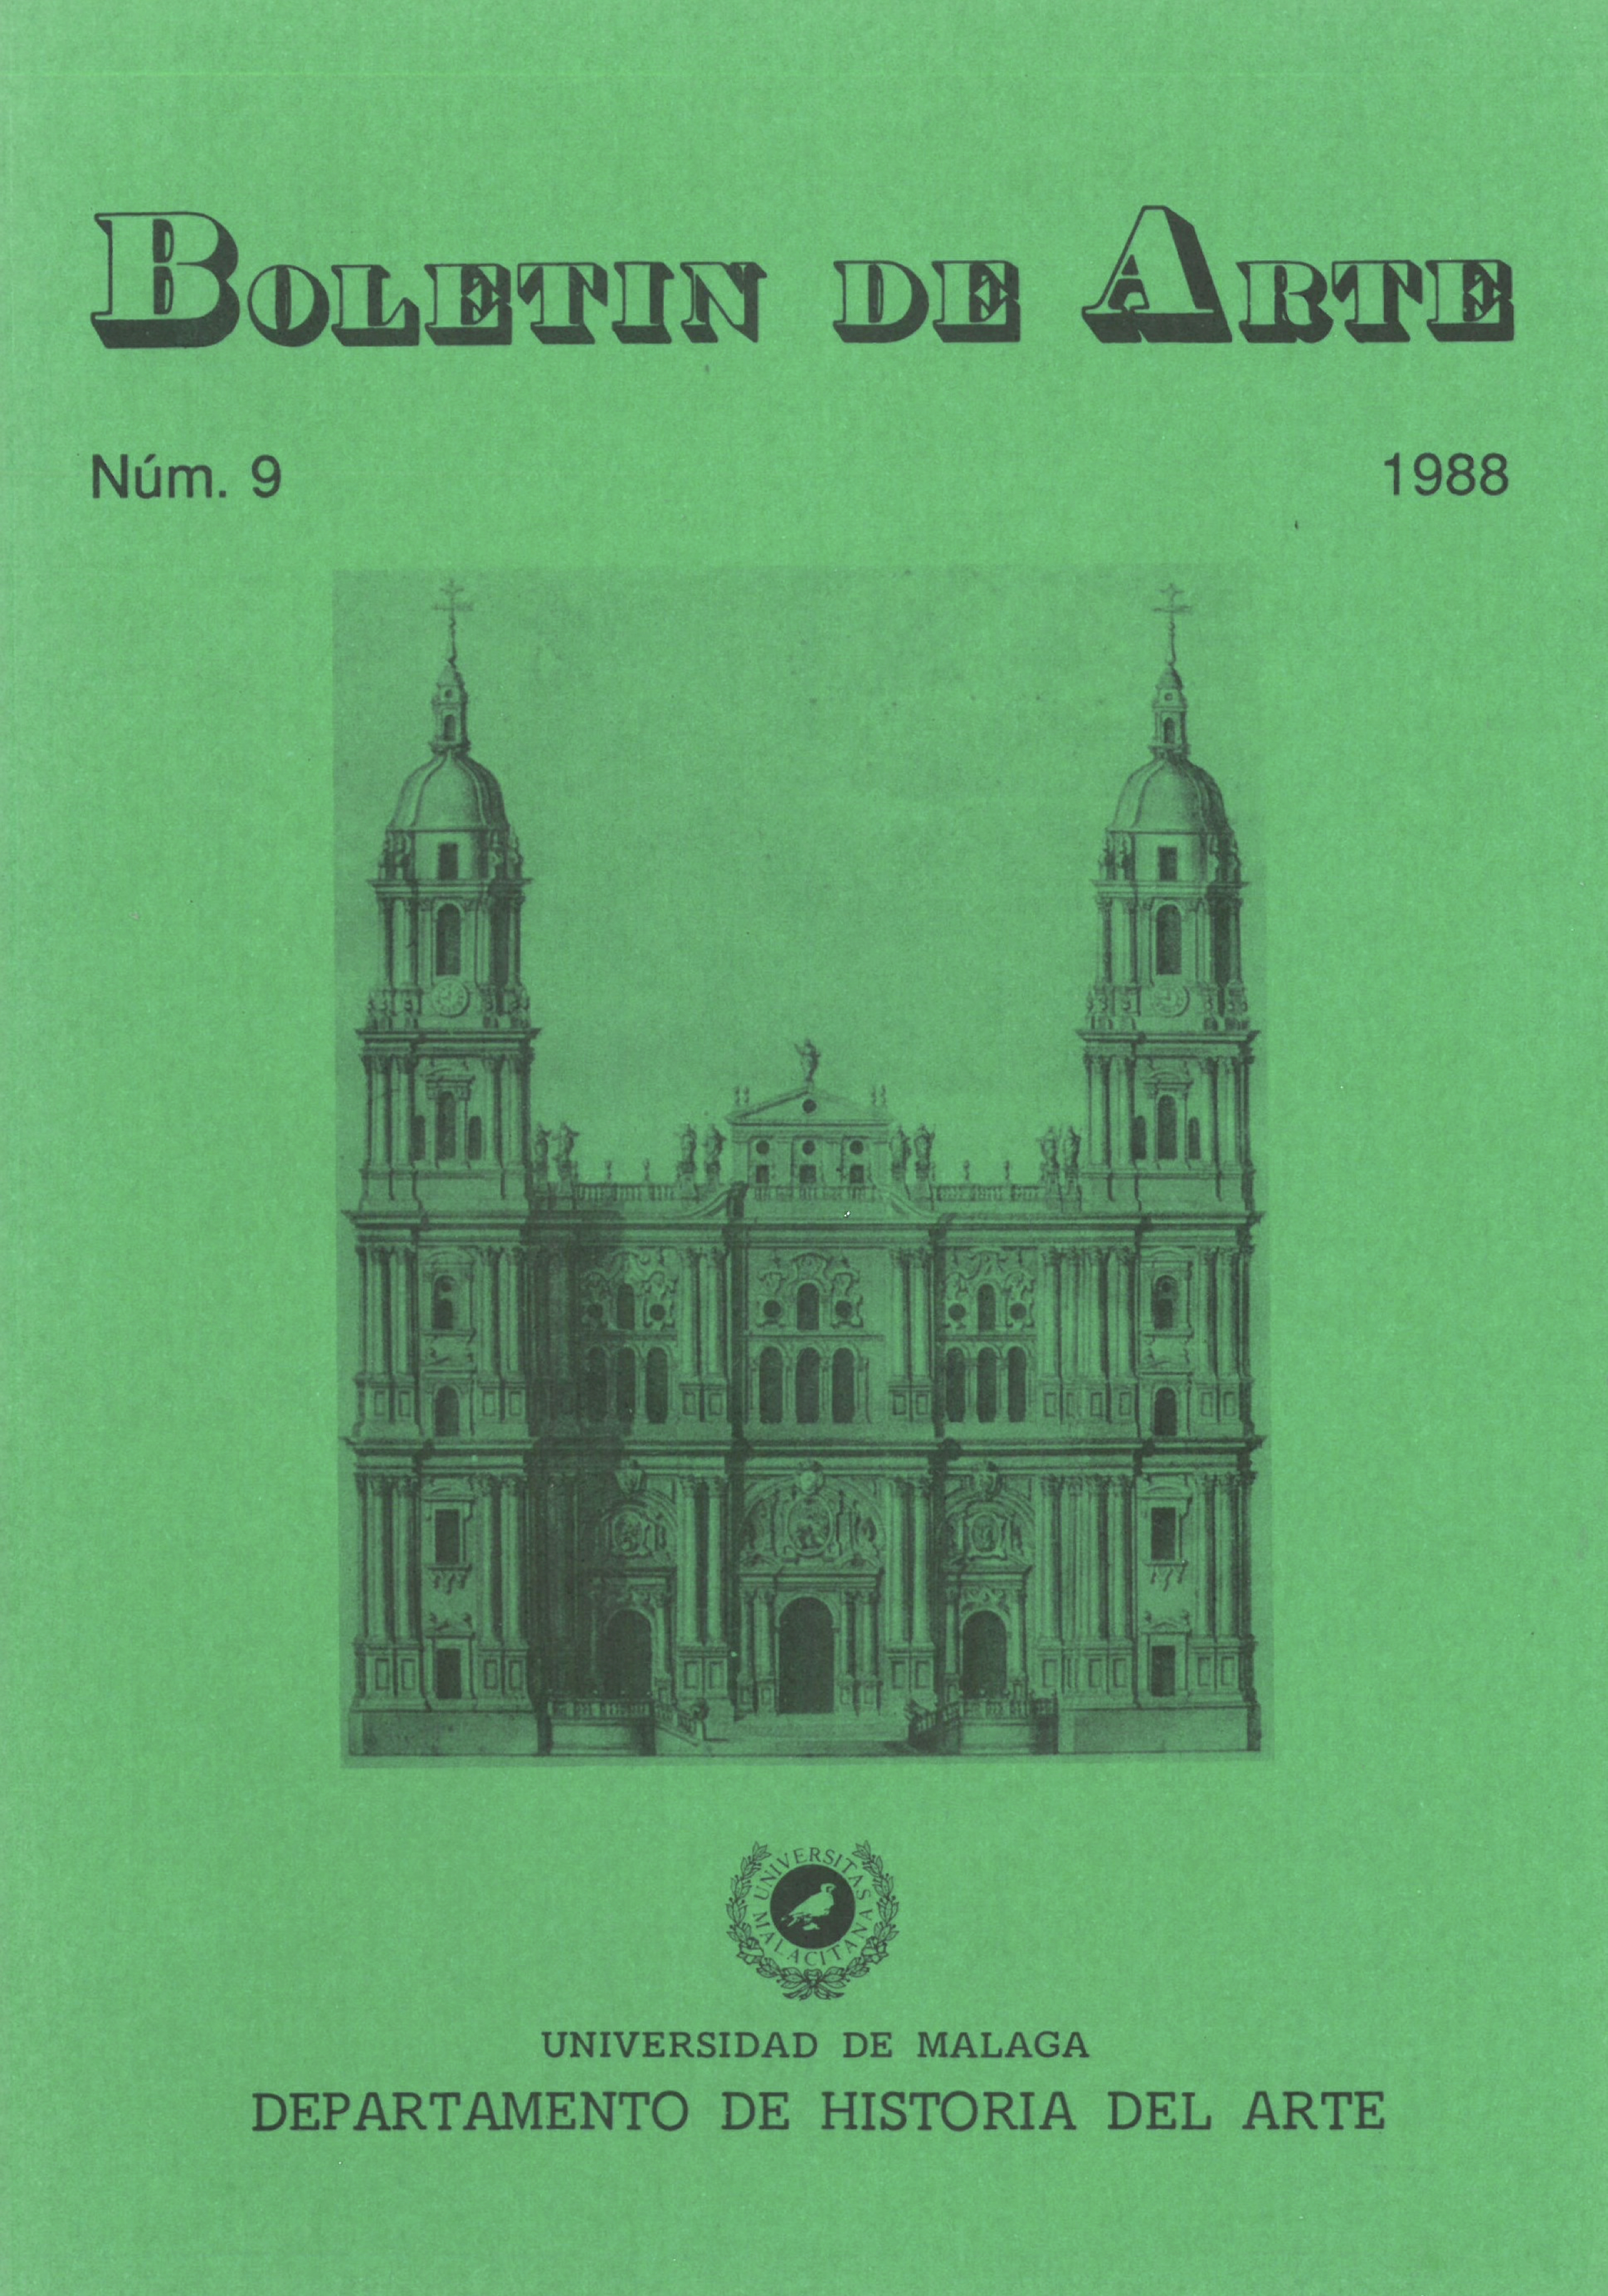 					View No. 9 (1988)
				